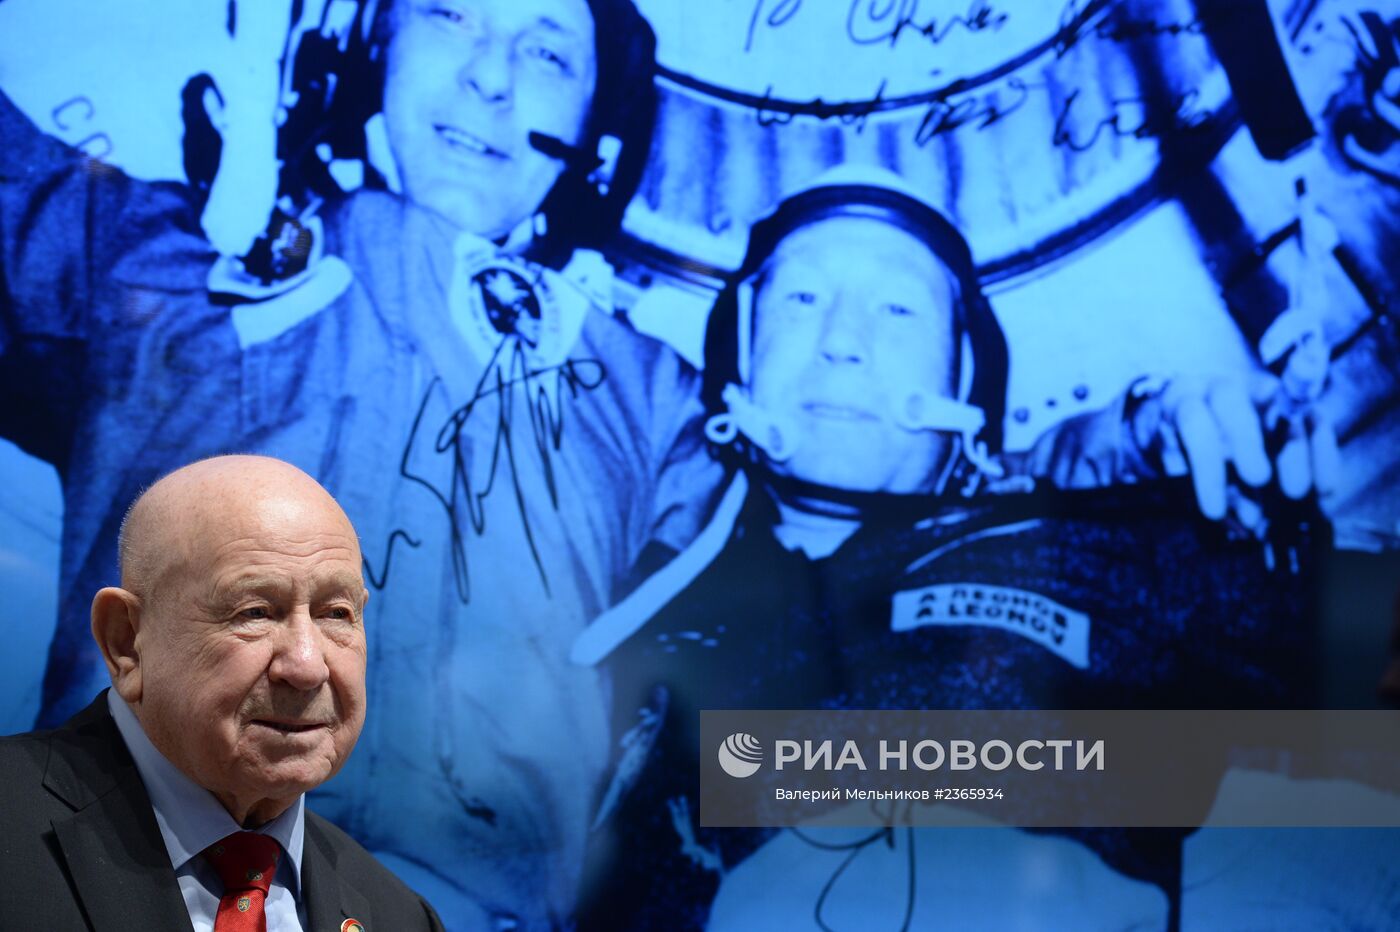 Посещение космонавтами А.Леоновым и Т.Стэффордом павильона OMEGA